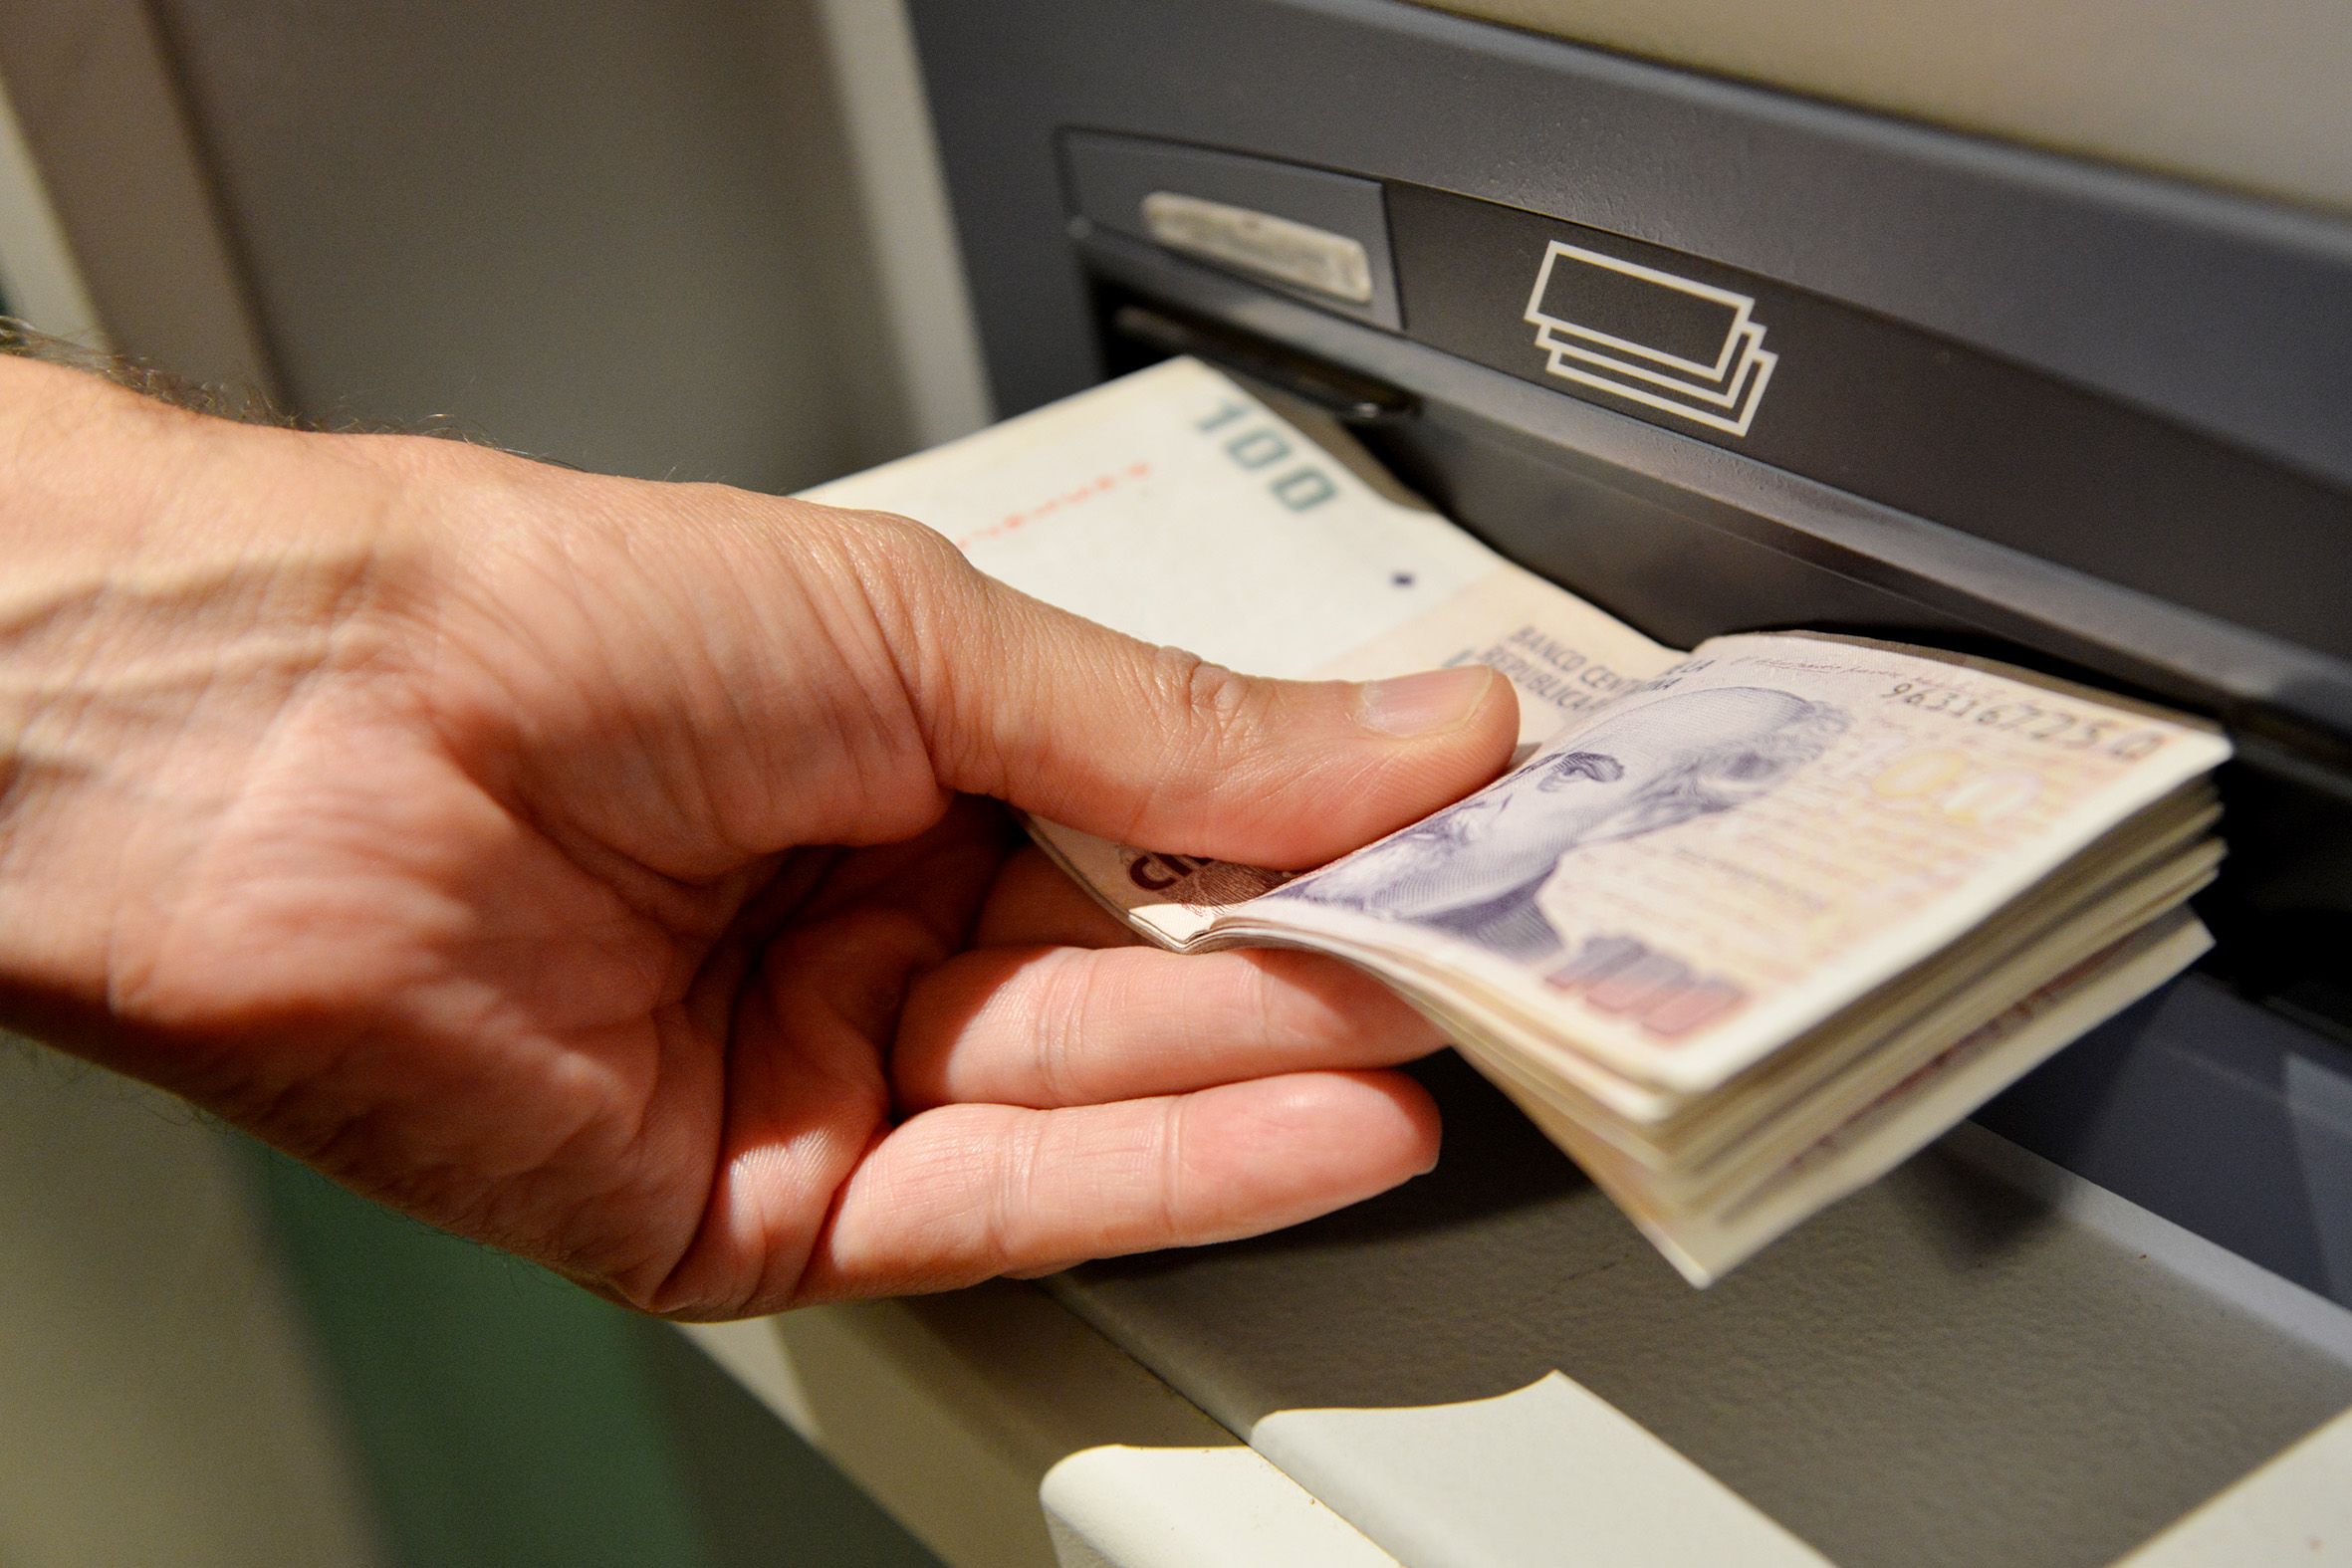 Hackean cajeros automáticos y hacen que escupan billetes sin parar